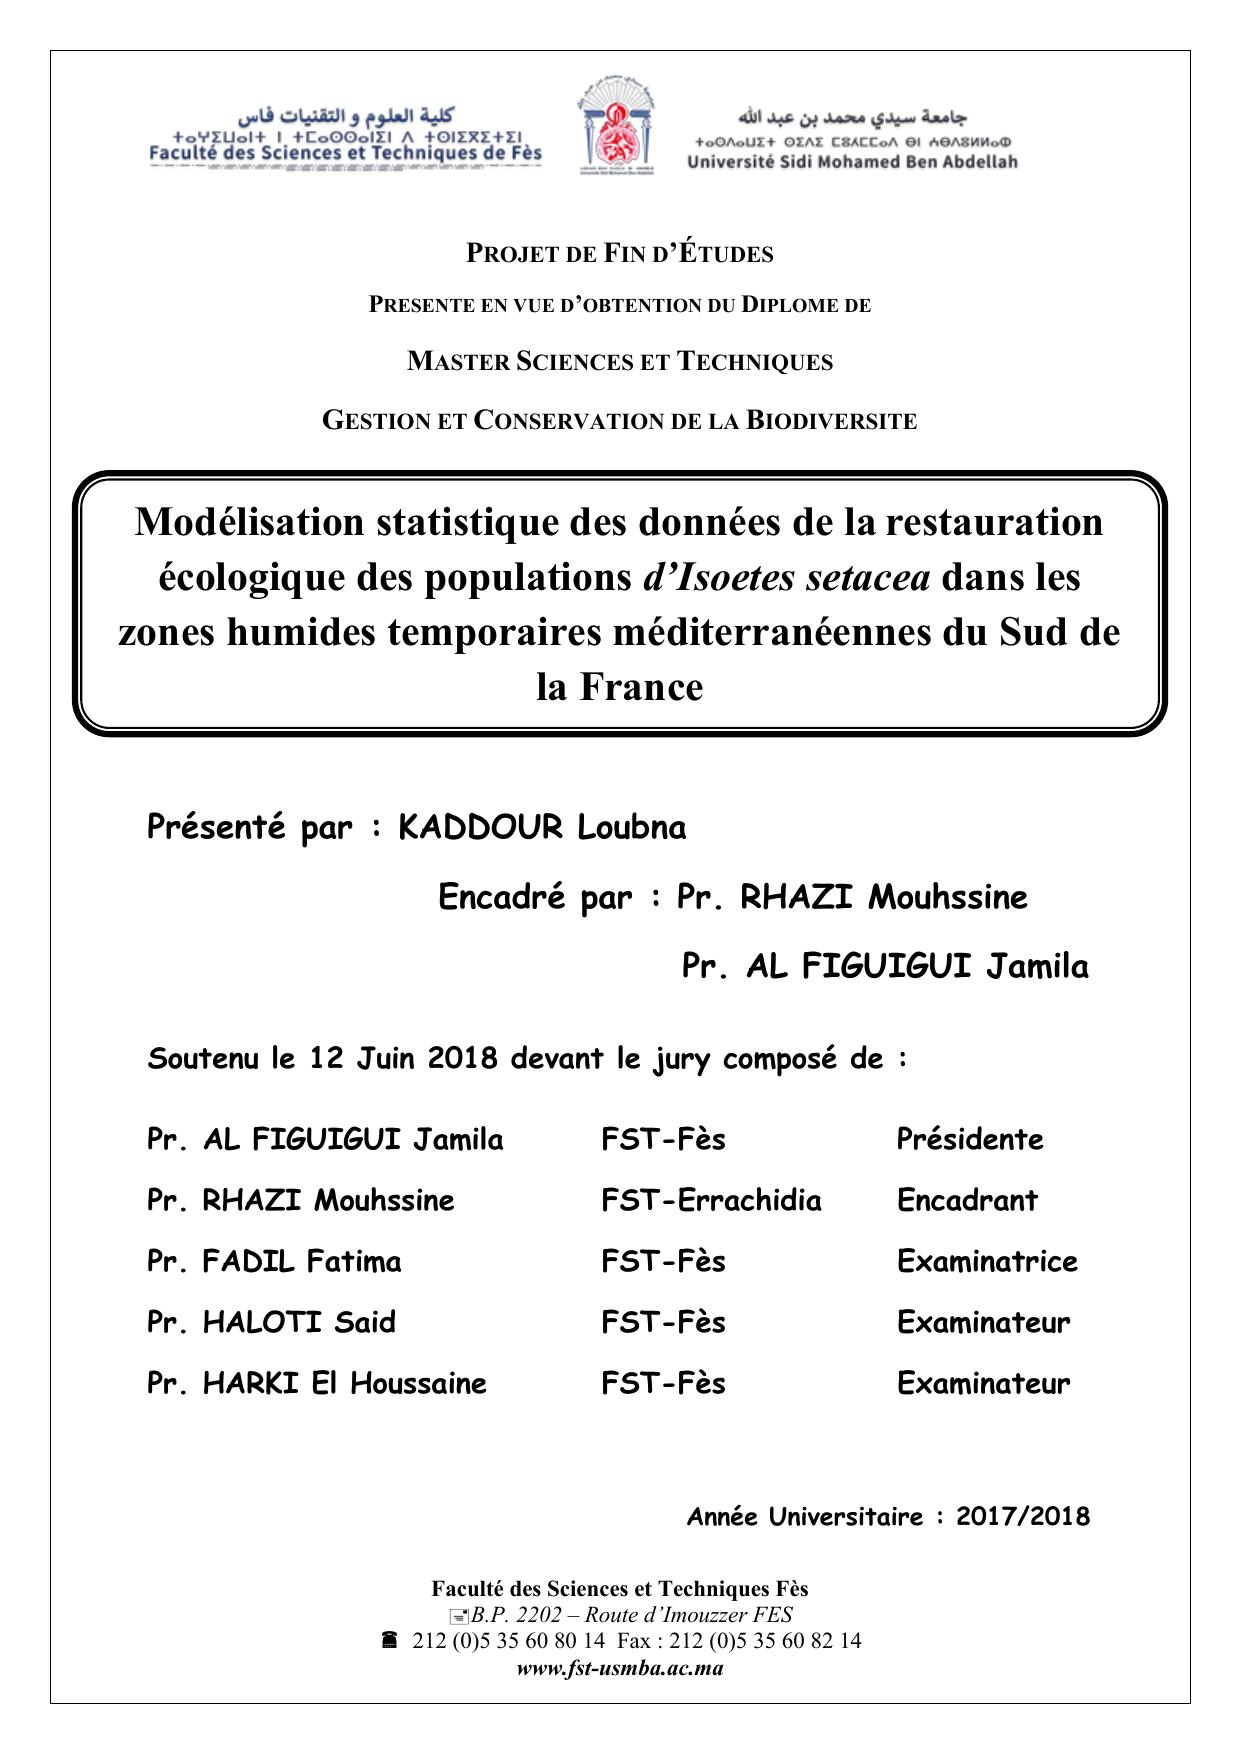 Modélisation statistique des données de la restauration écologique des populations d’Isoetes setacea dans les zones humides temporaires méditerranéennes du Sud de la France